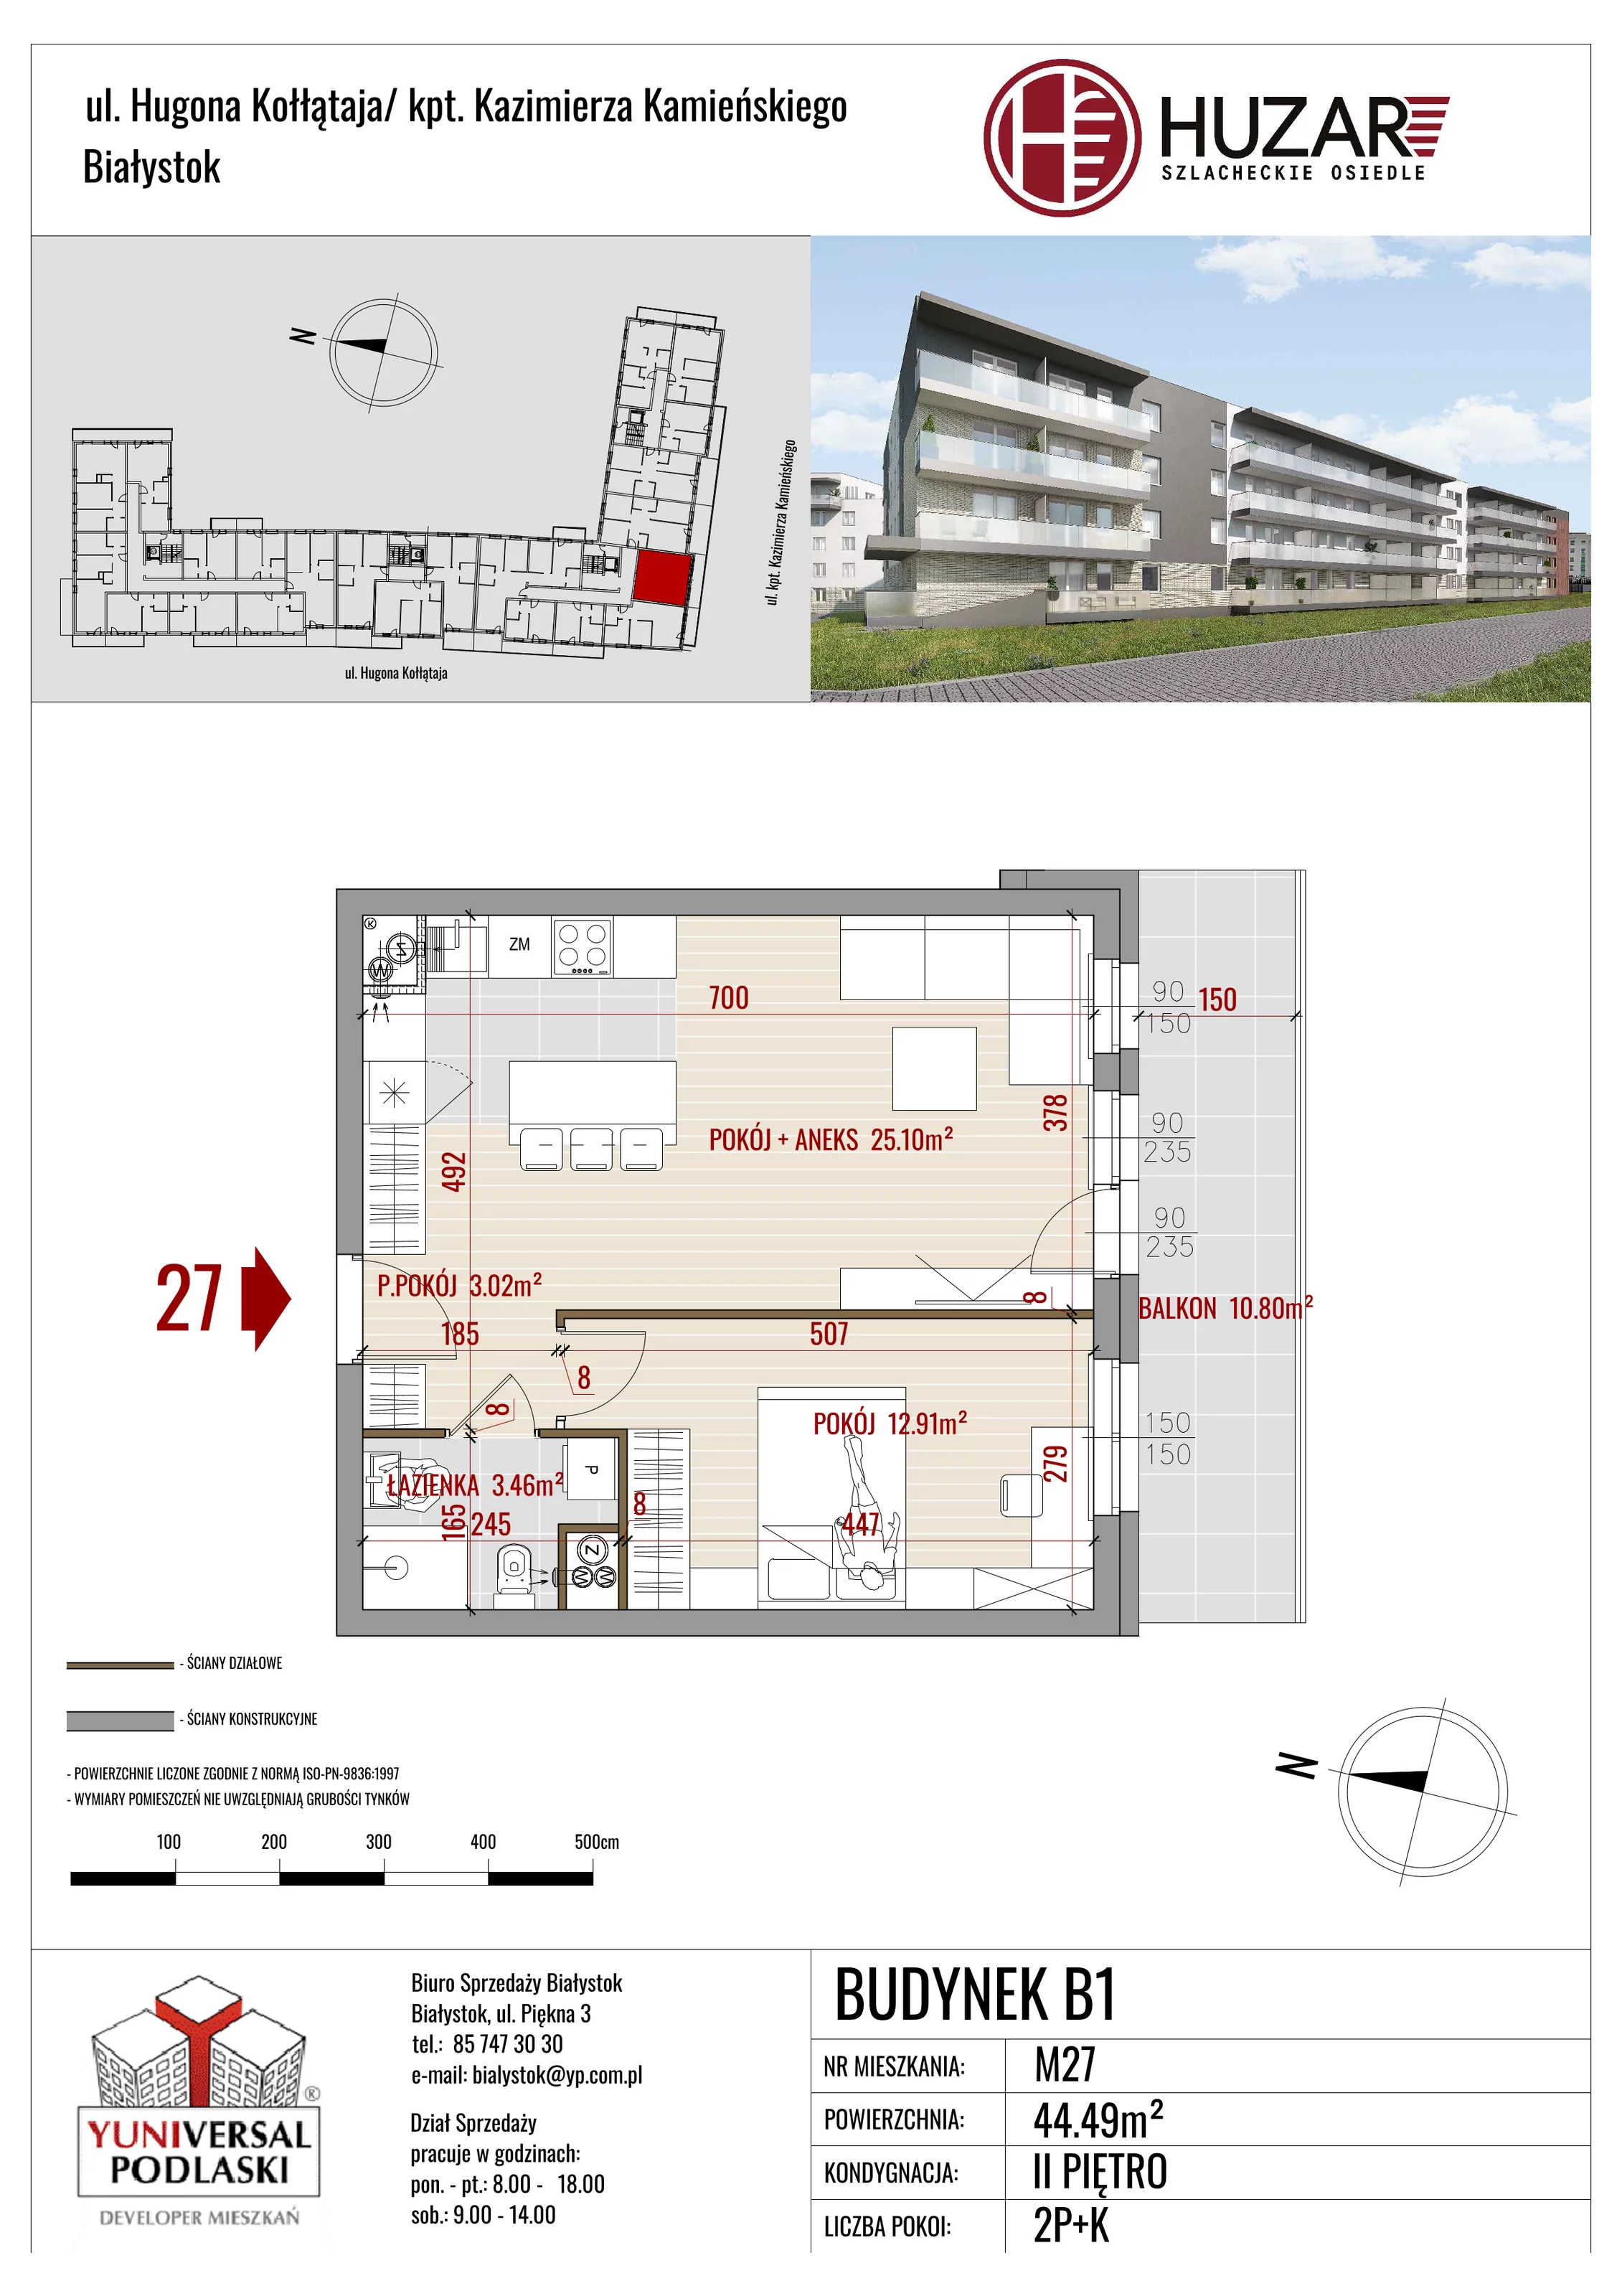 Mieszkanie 44,49 m², piętro 2, oferta nr B1/27, Huzar, Białystok, Bacieczki, ul. Hugona Kołłątaja / kpt. Kazimierza Kamieńskiego